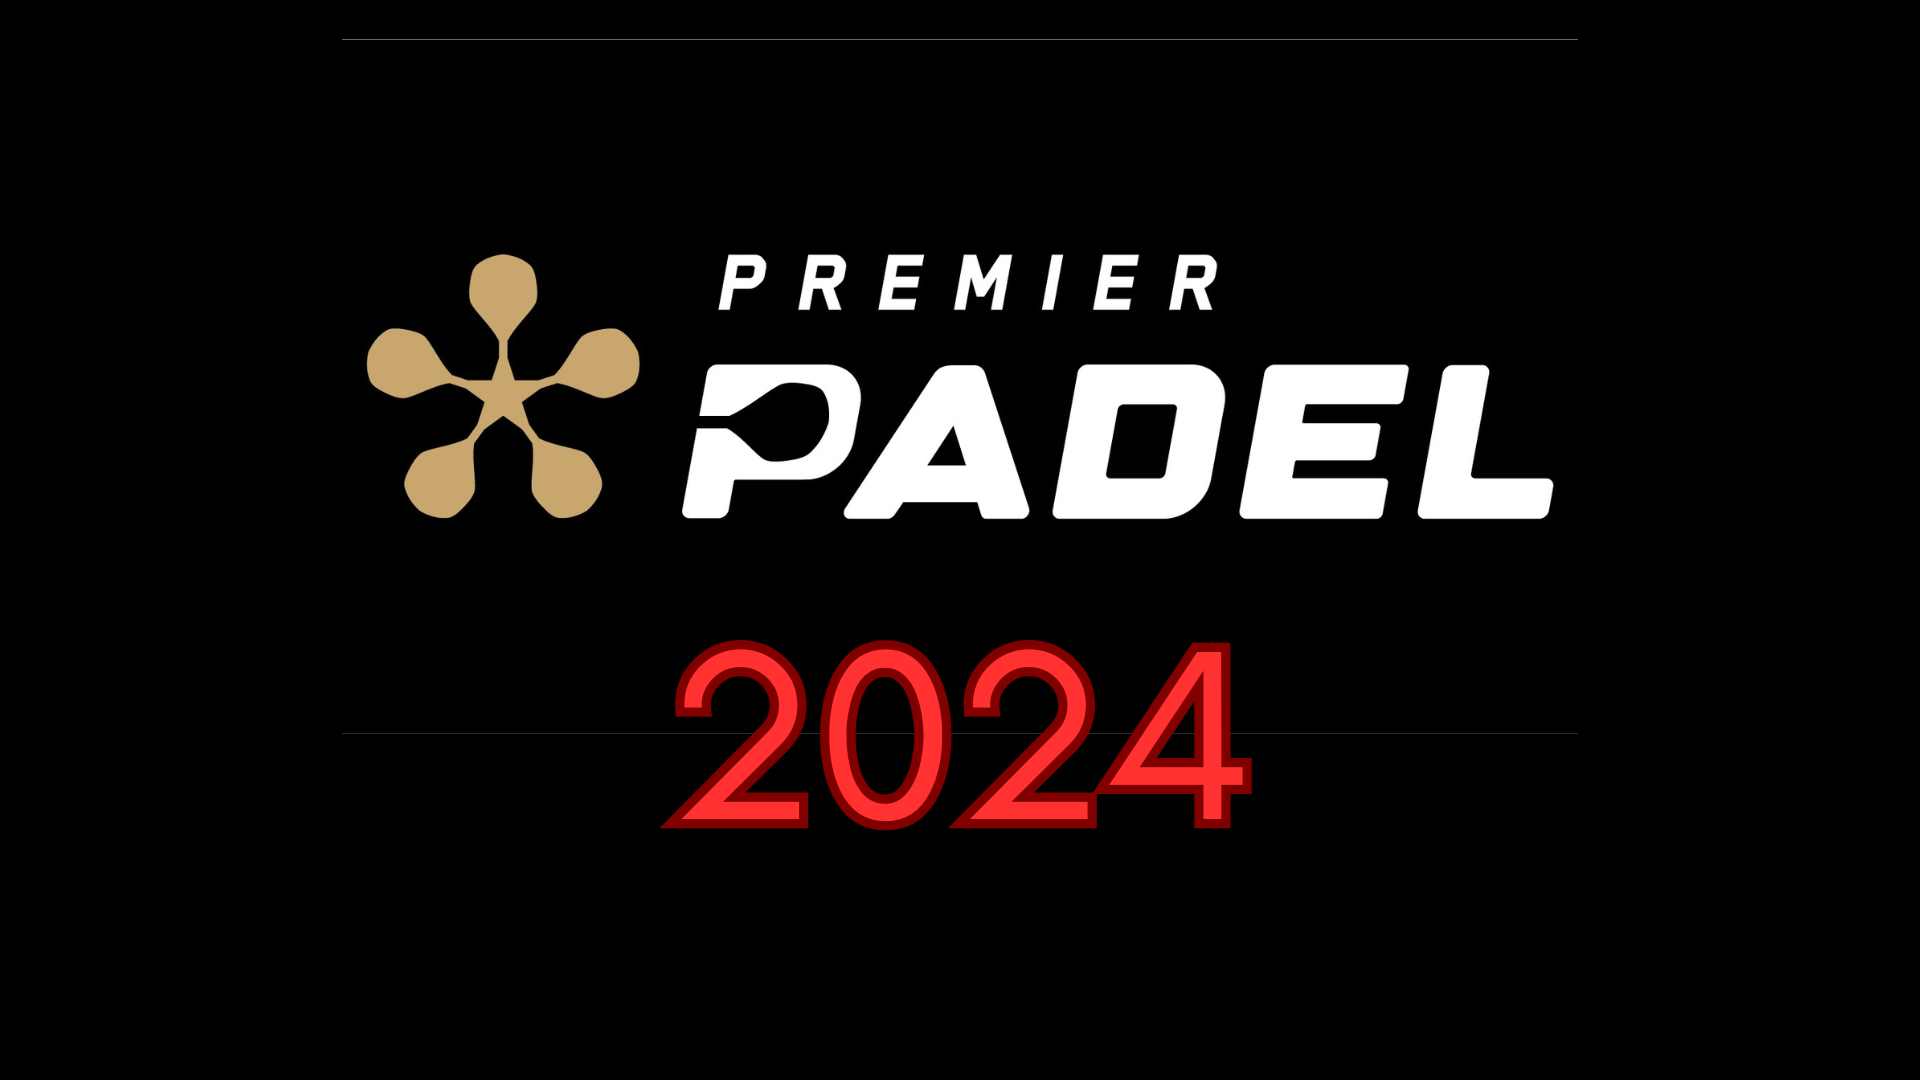 Premier Padel Logotip de la finestra de transferència 2024